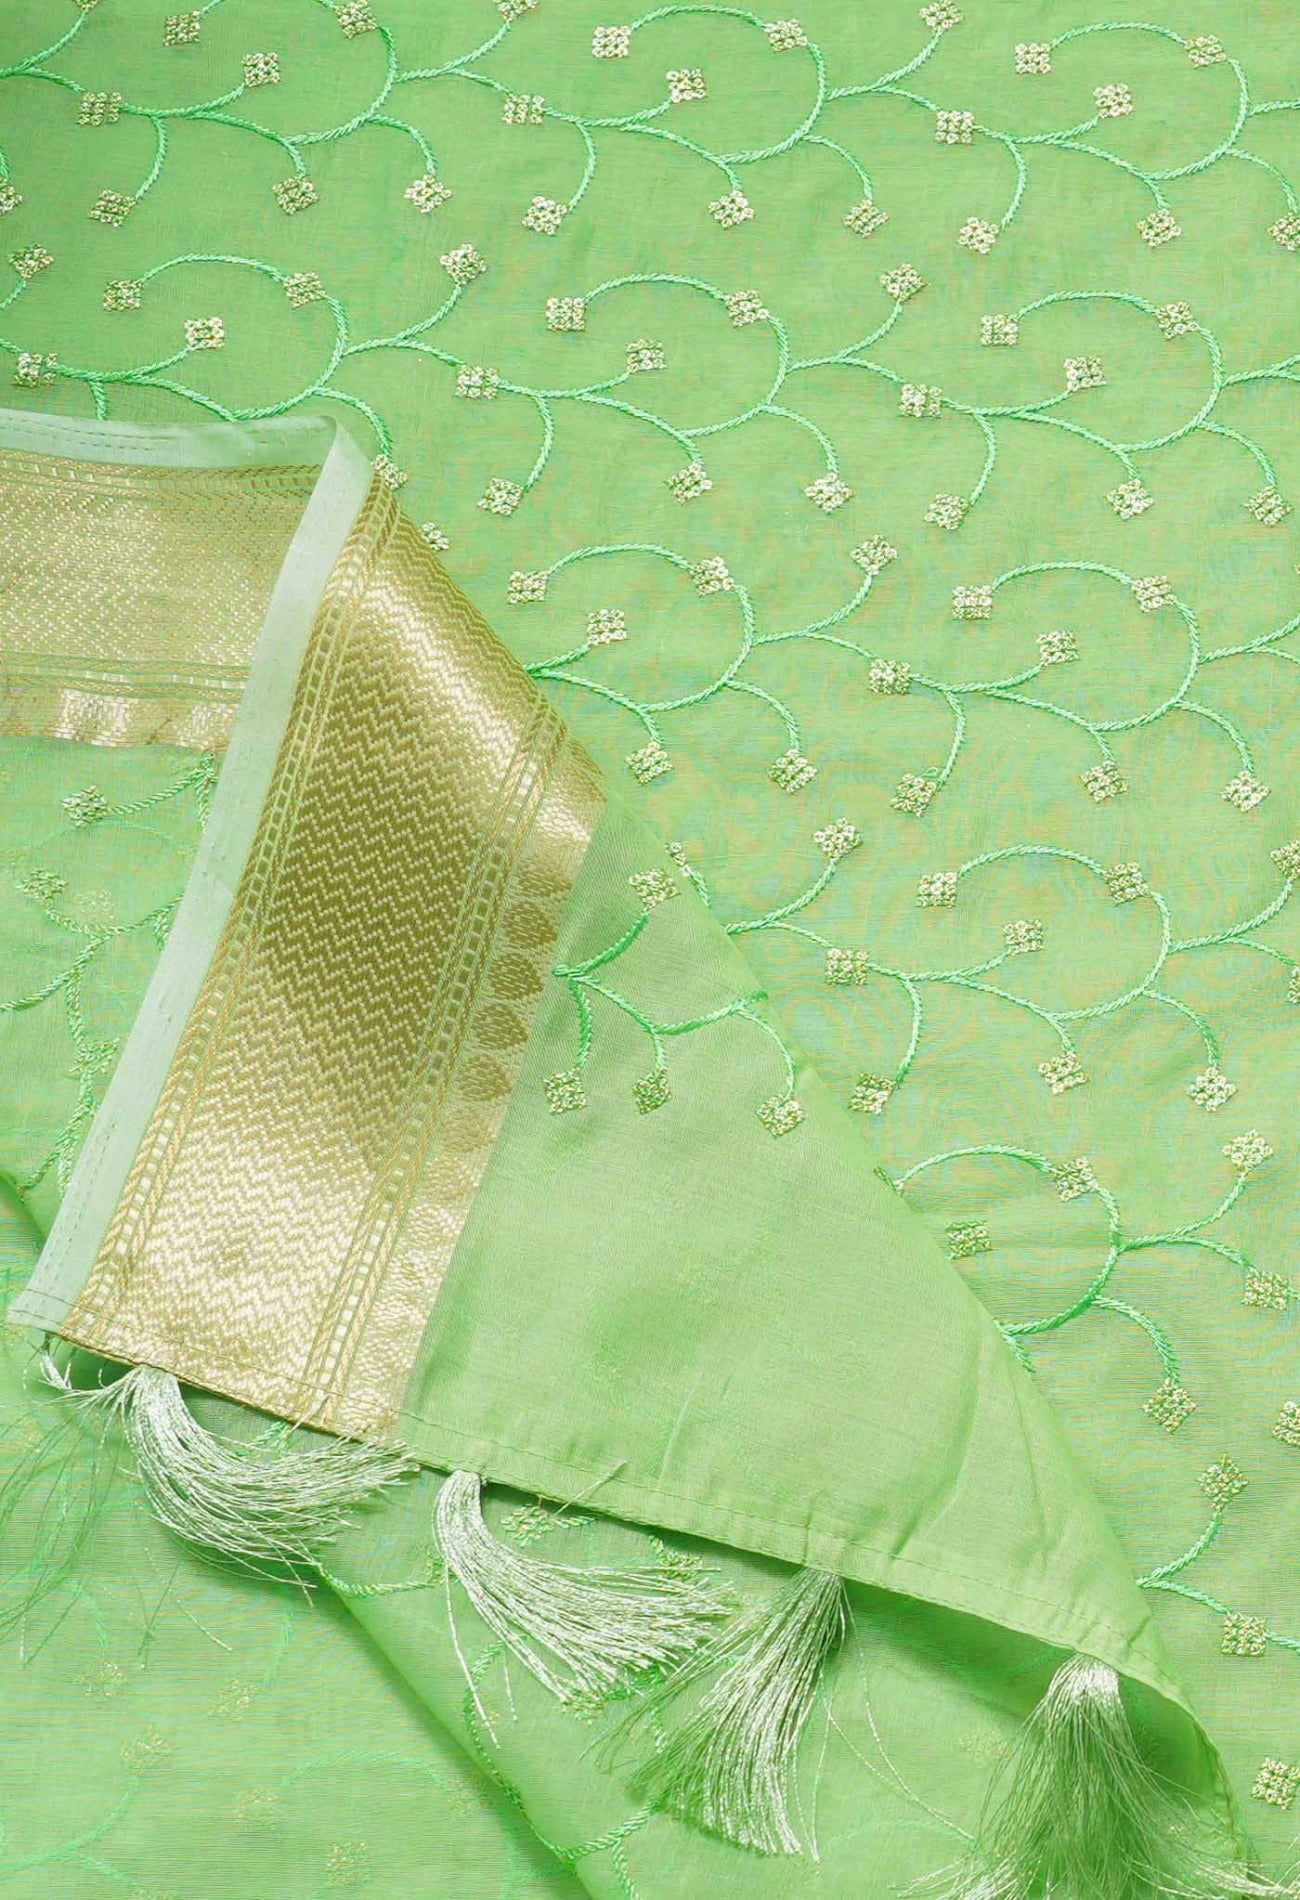 Green Pure Embroidery Chanderi Sico Saree